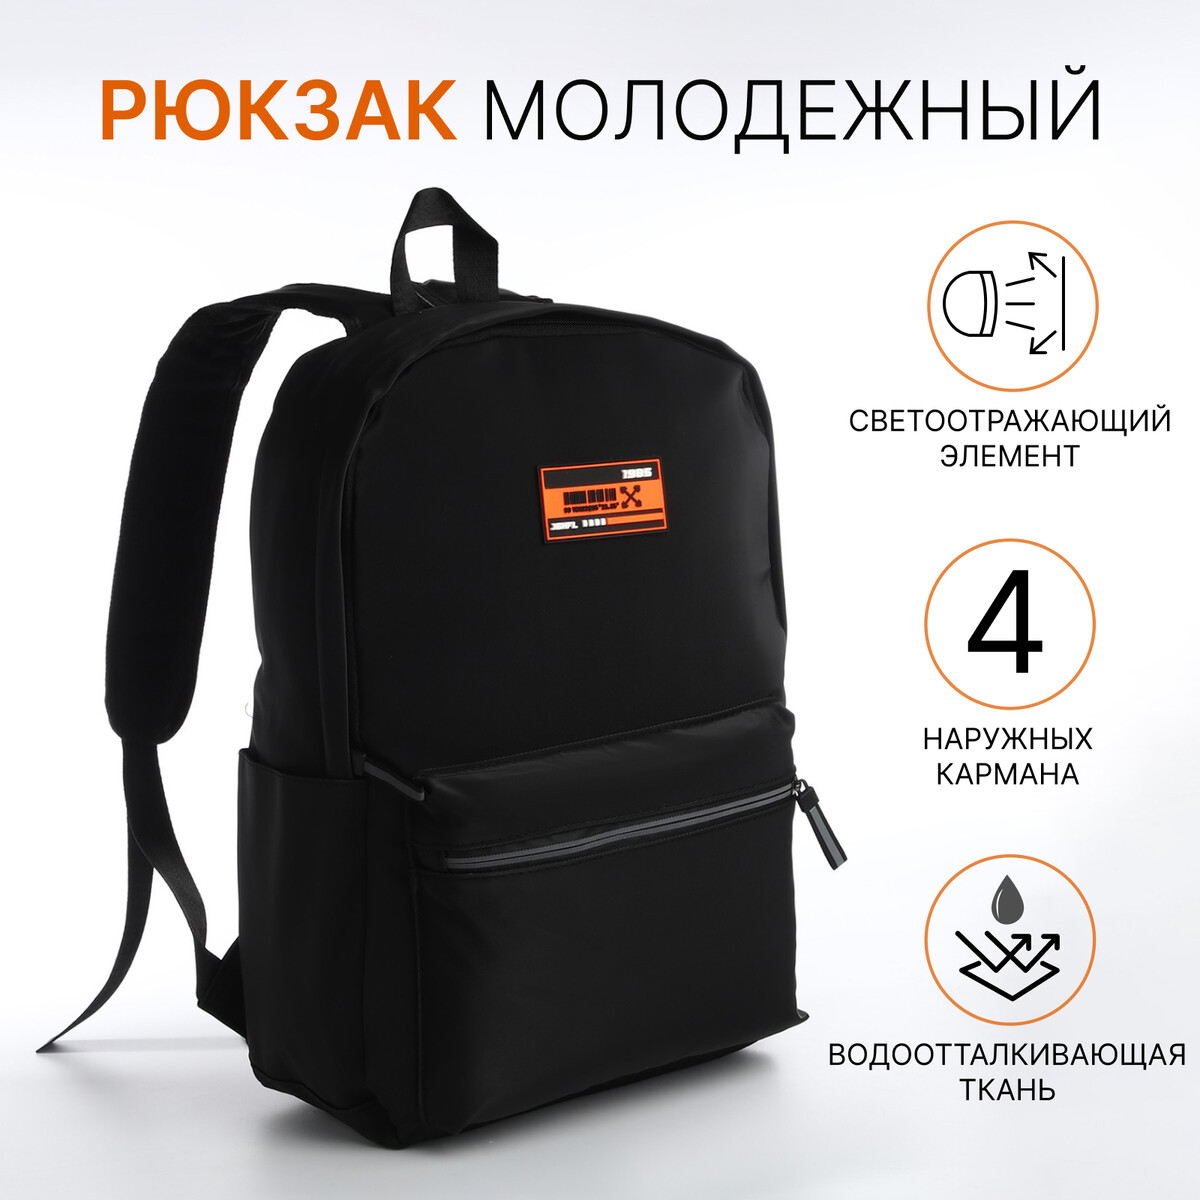 Рюкзак молодежный из текстиля на молнии, 4 кармана, цвет черный/оранжевый рюкзак ninetygo urban daily backpack оранжевый